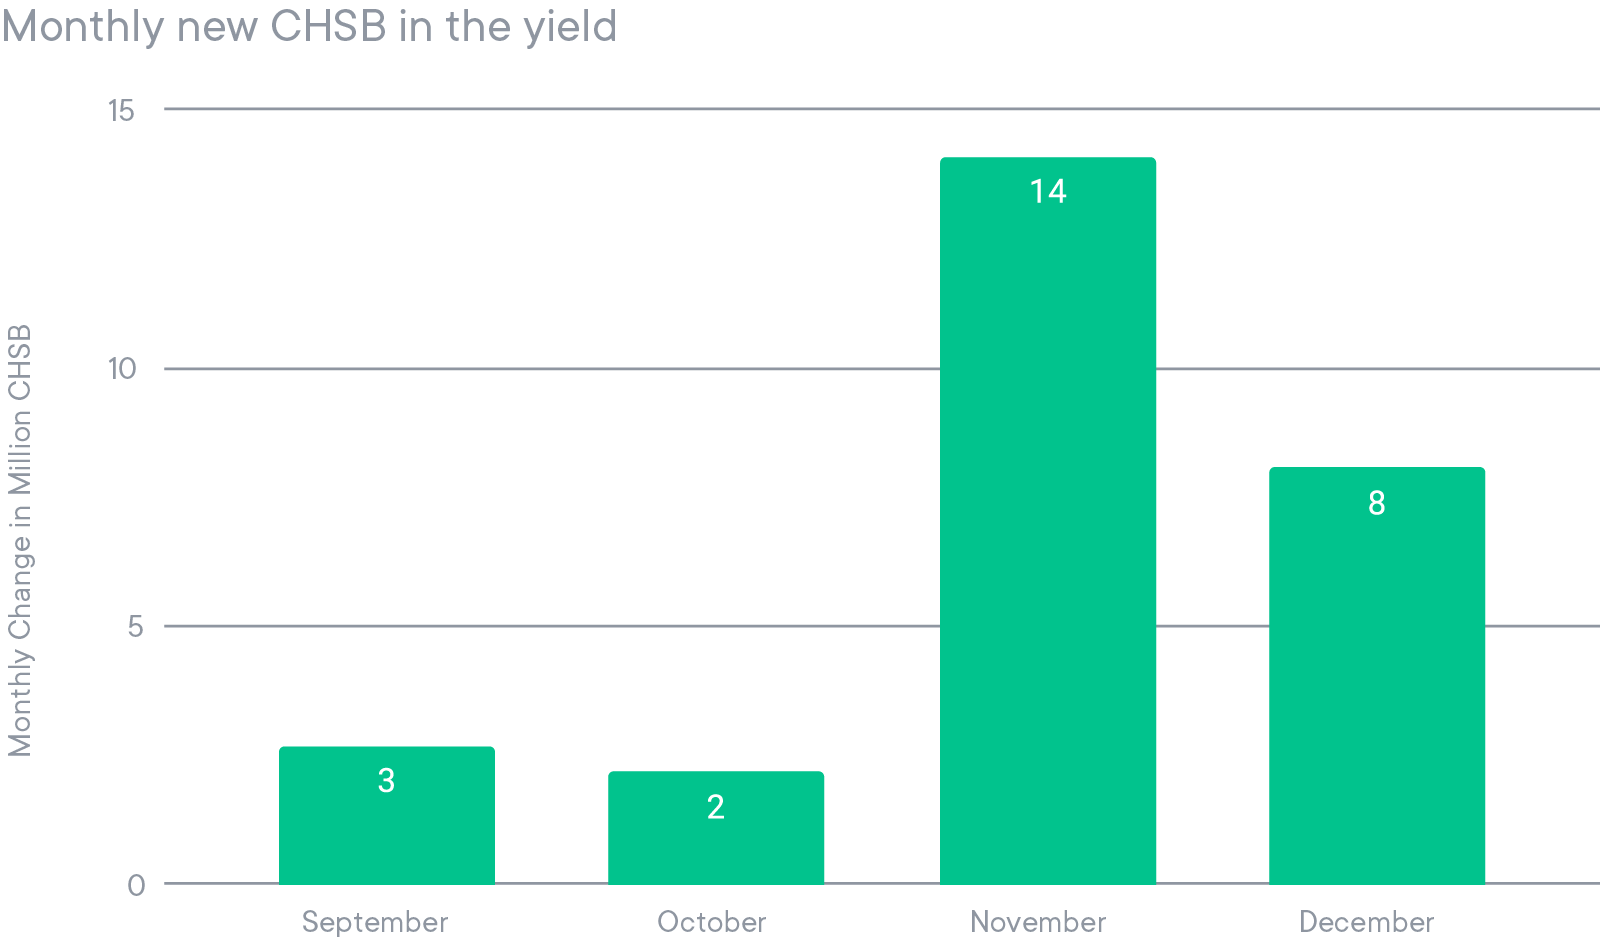 Nouveaux CHSB dans le Yield chaque mois